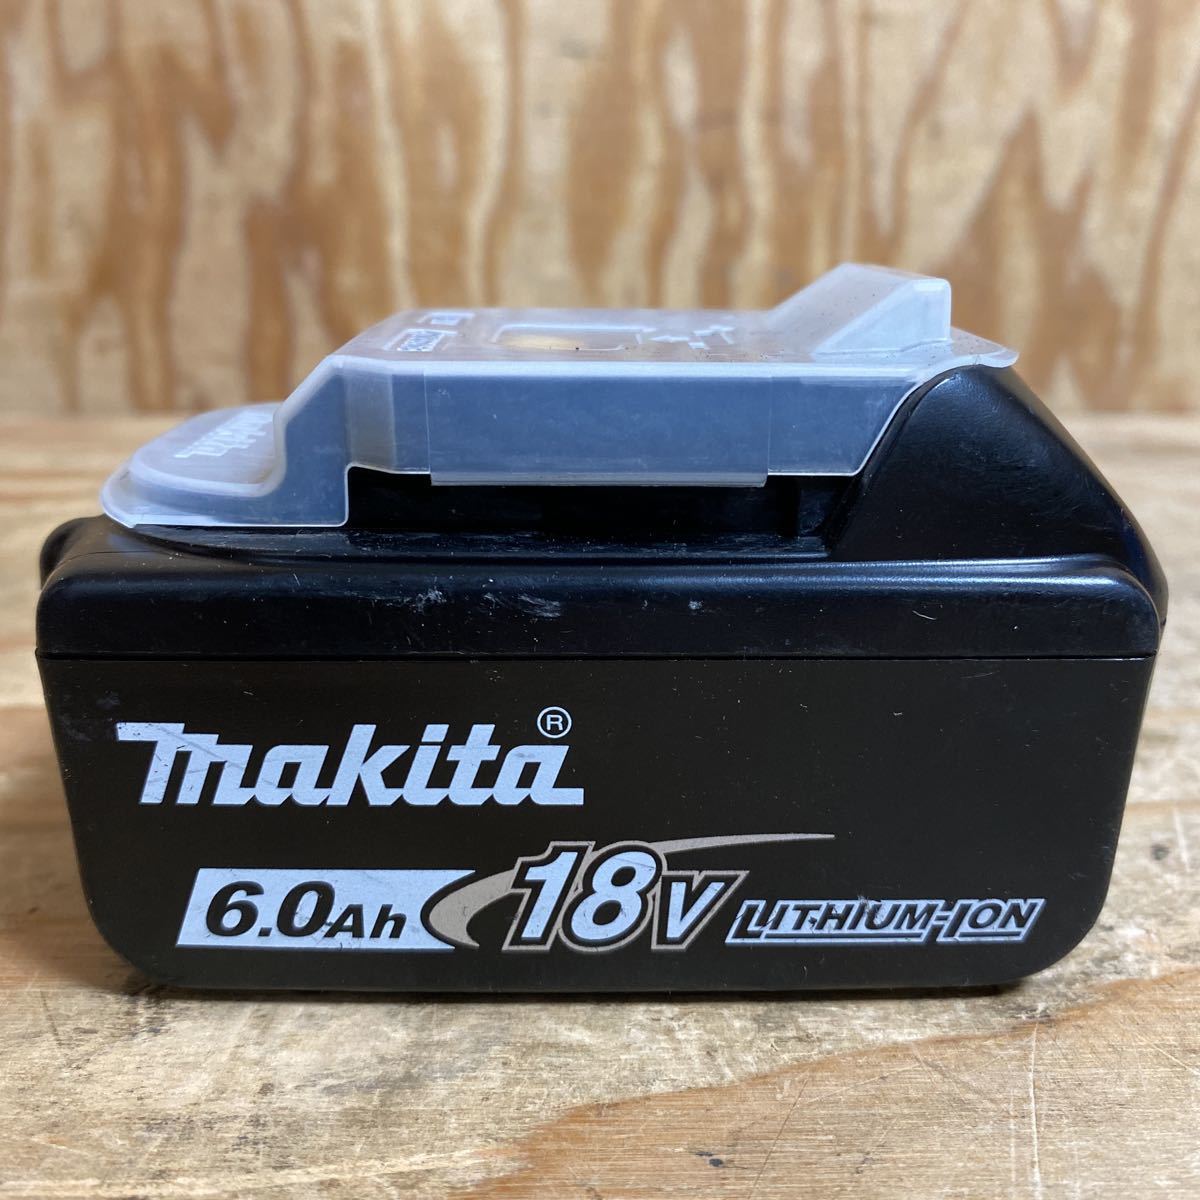 マキタ makita 18V(6.0Ah)純正リチウムイオンバッテリー BL1860B リサイクルショップ 電動工具の買取屋 買取の匠 福山店